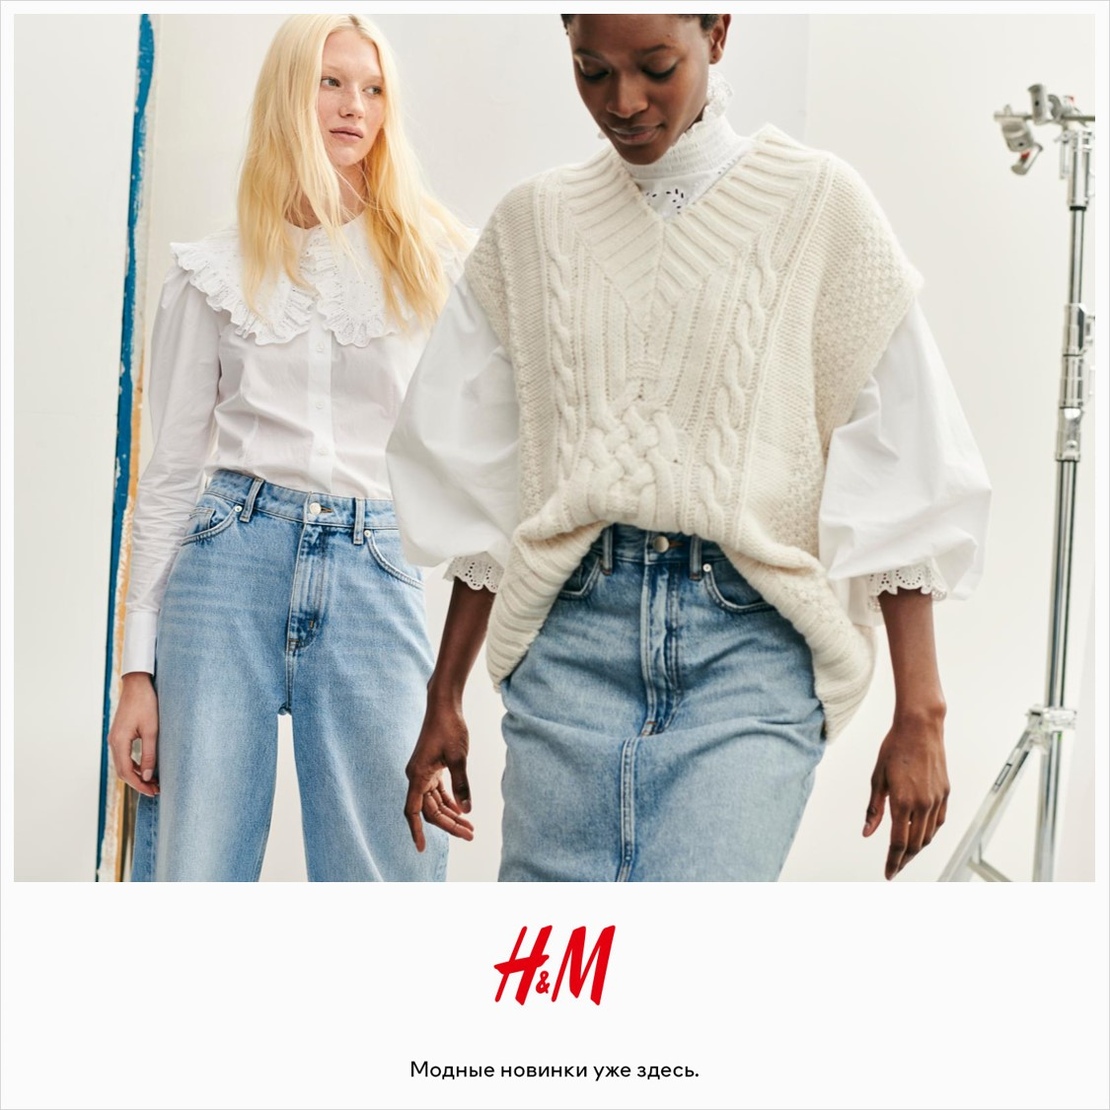 ДАРИМ СЕРТИФИКАТЫ В H&M  Уже 15 октября состоится долгожданная презентация бренда H&M в ТРК Triniti. В честь этого события мы объявляем КОНКУРС и разыгрываем 10 сертификатов номиналом 30 рубл